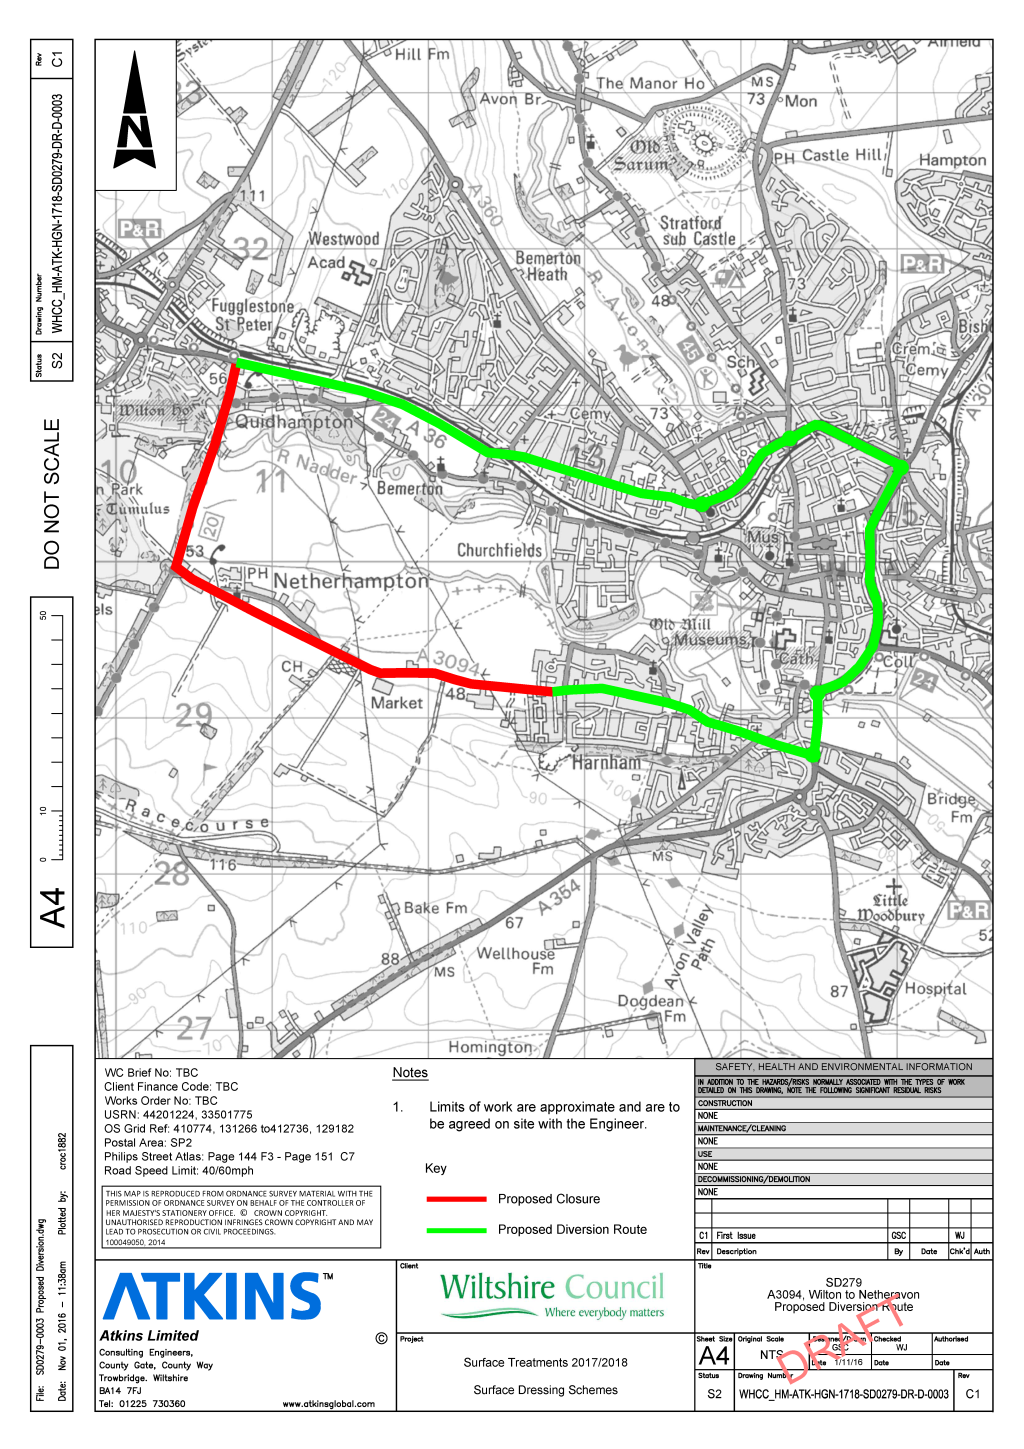 Plan of road closure, 19th May 2017